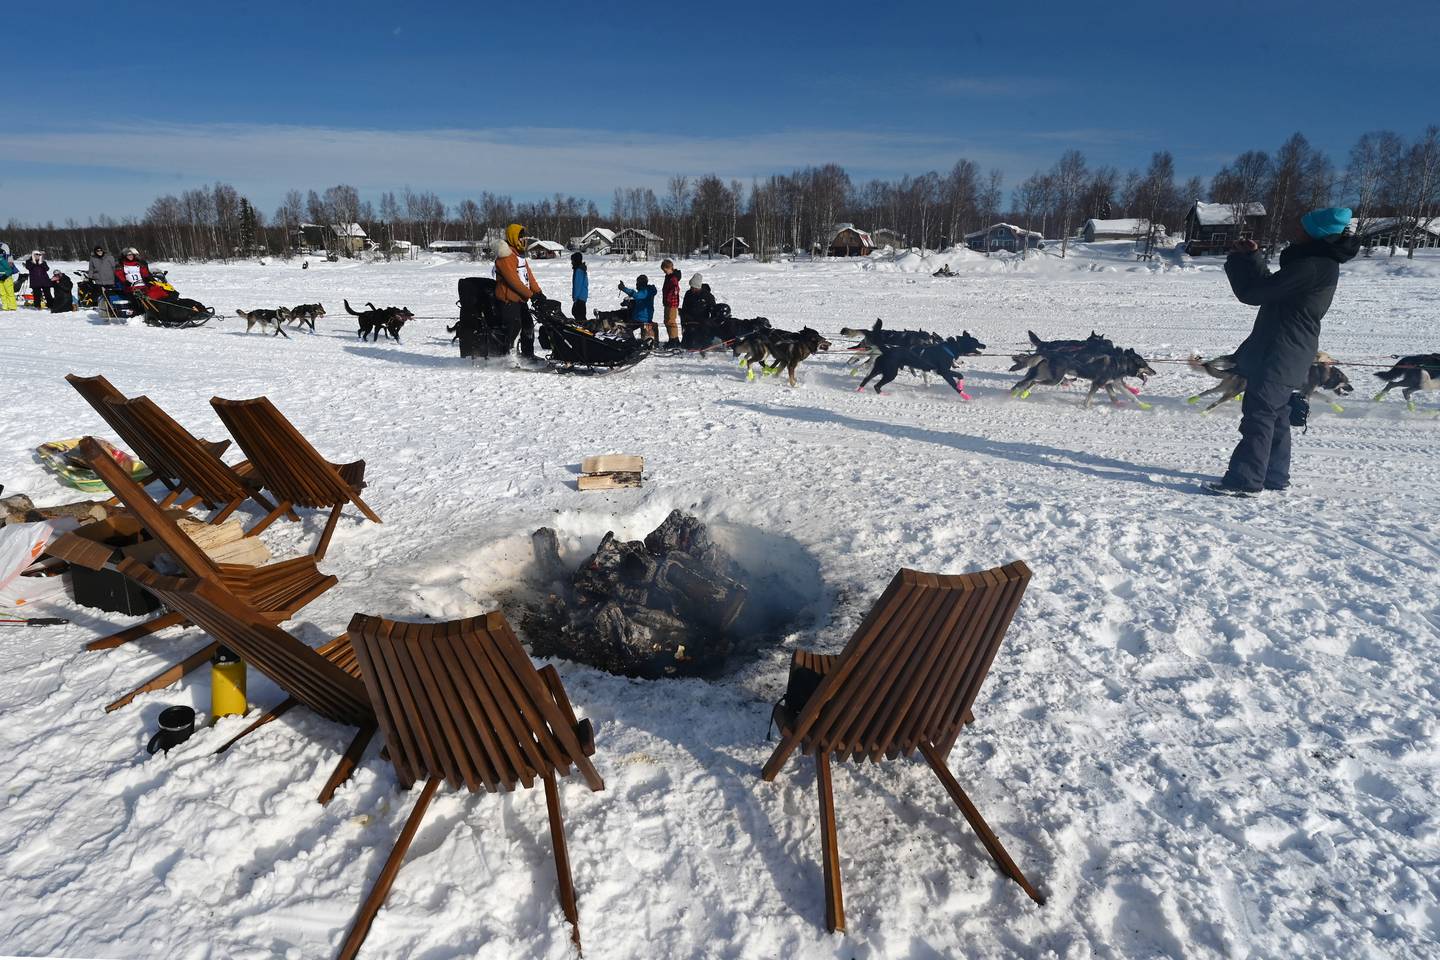 Iditarod restart